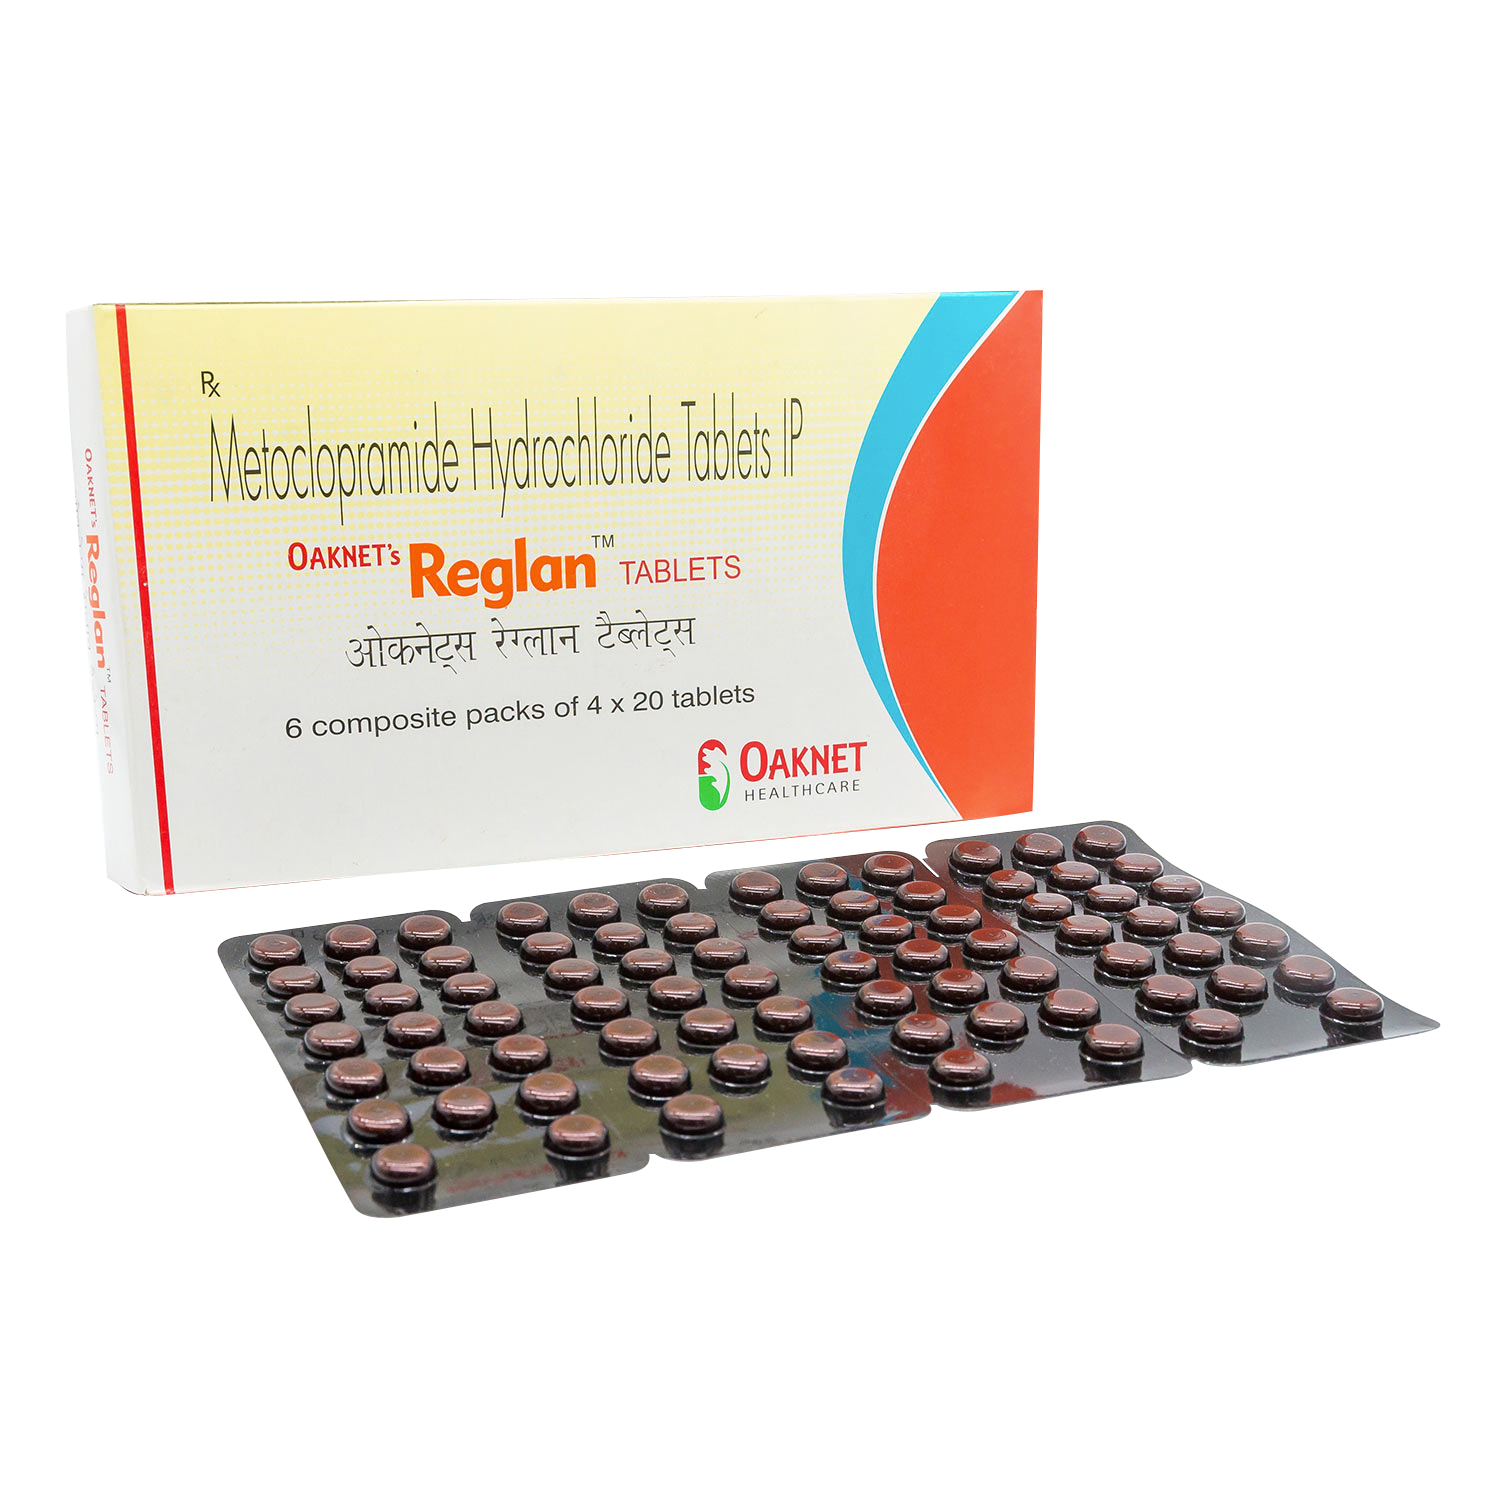 レグラン 塩酸メトクロプラミド 10mg通販 胃腸薬 薬通販のベストケンコー